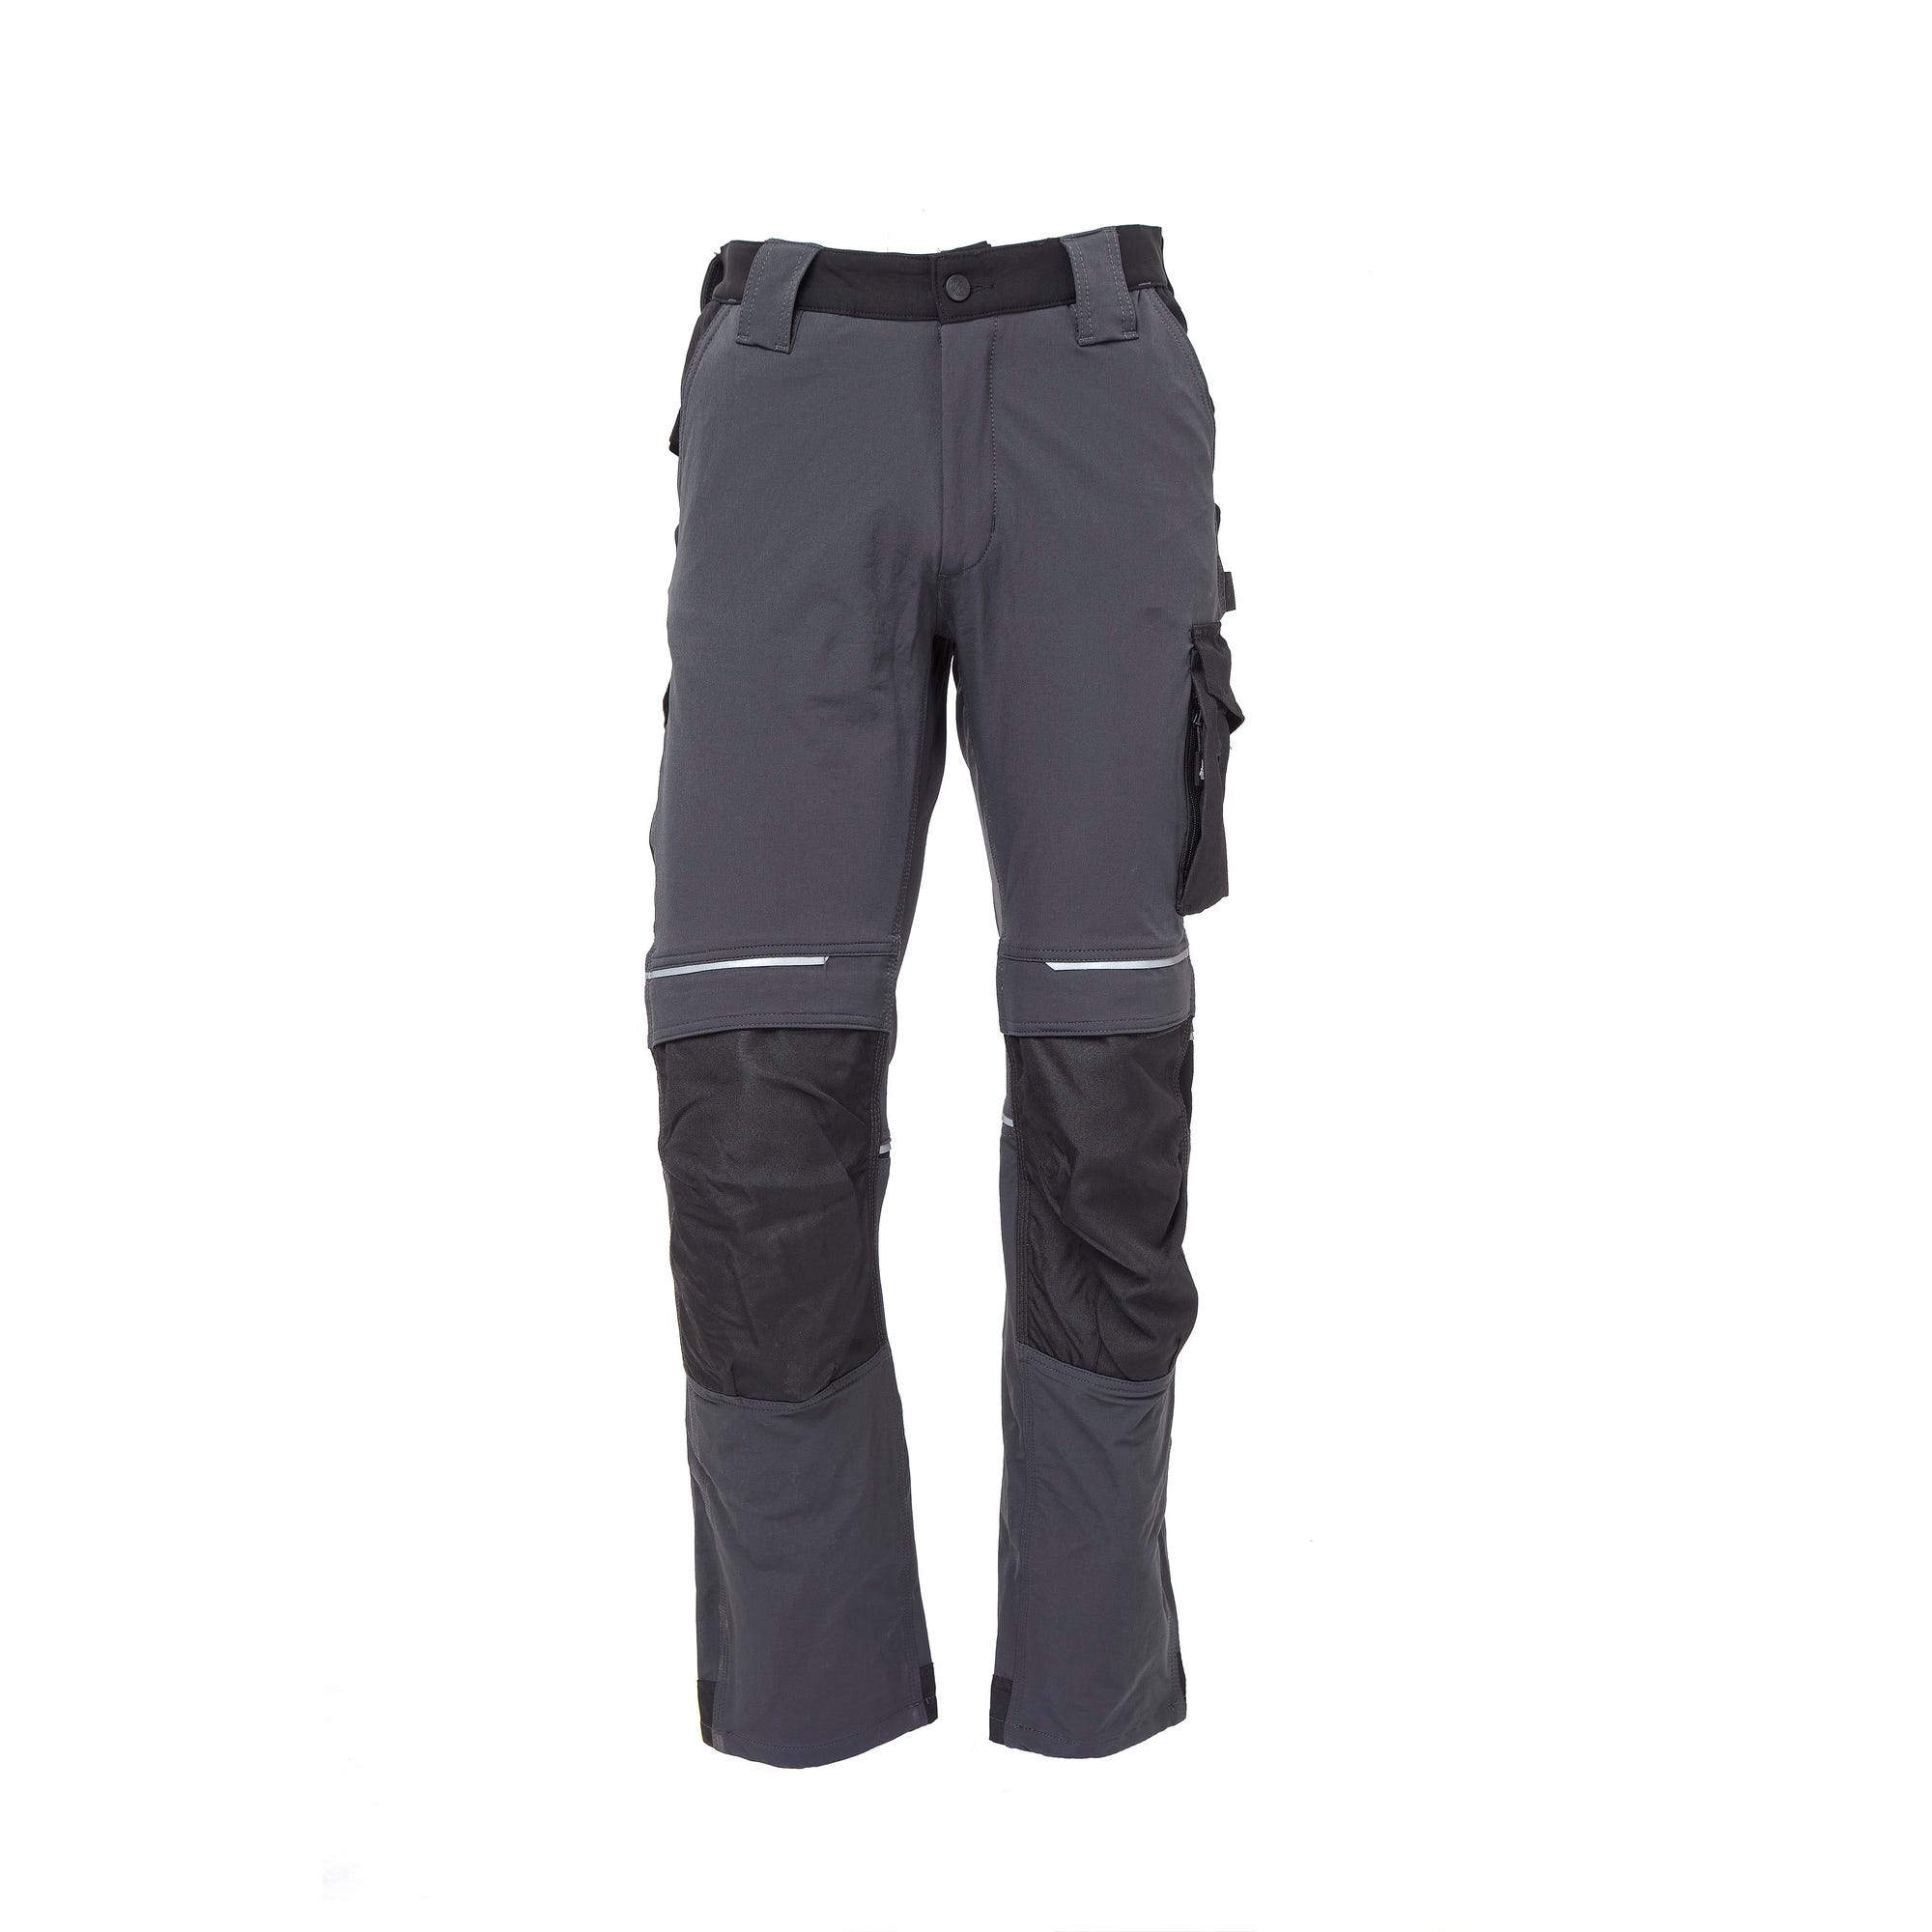 Pantalon de travail T.XL gris ATOM - U POWER 0